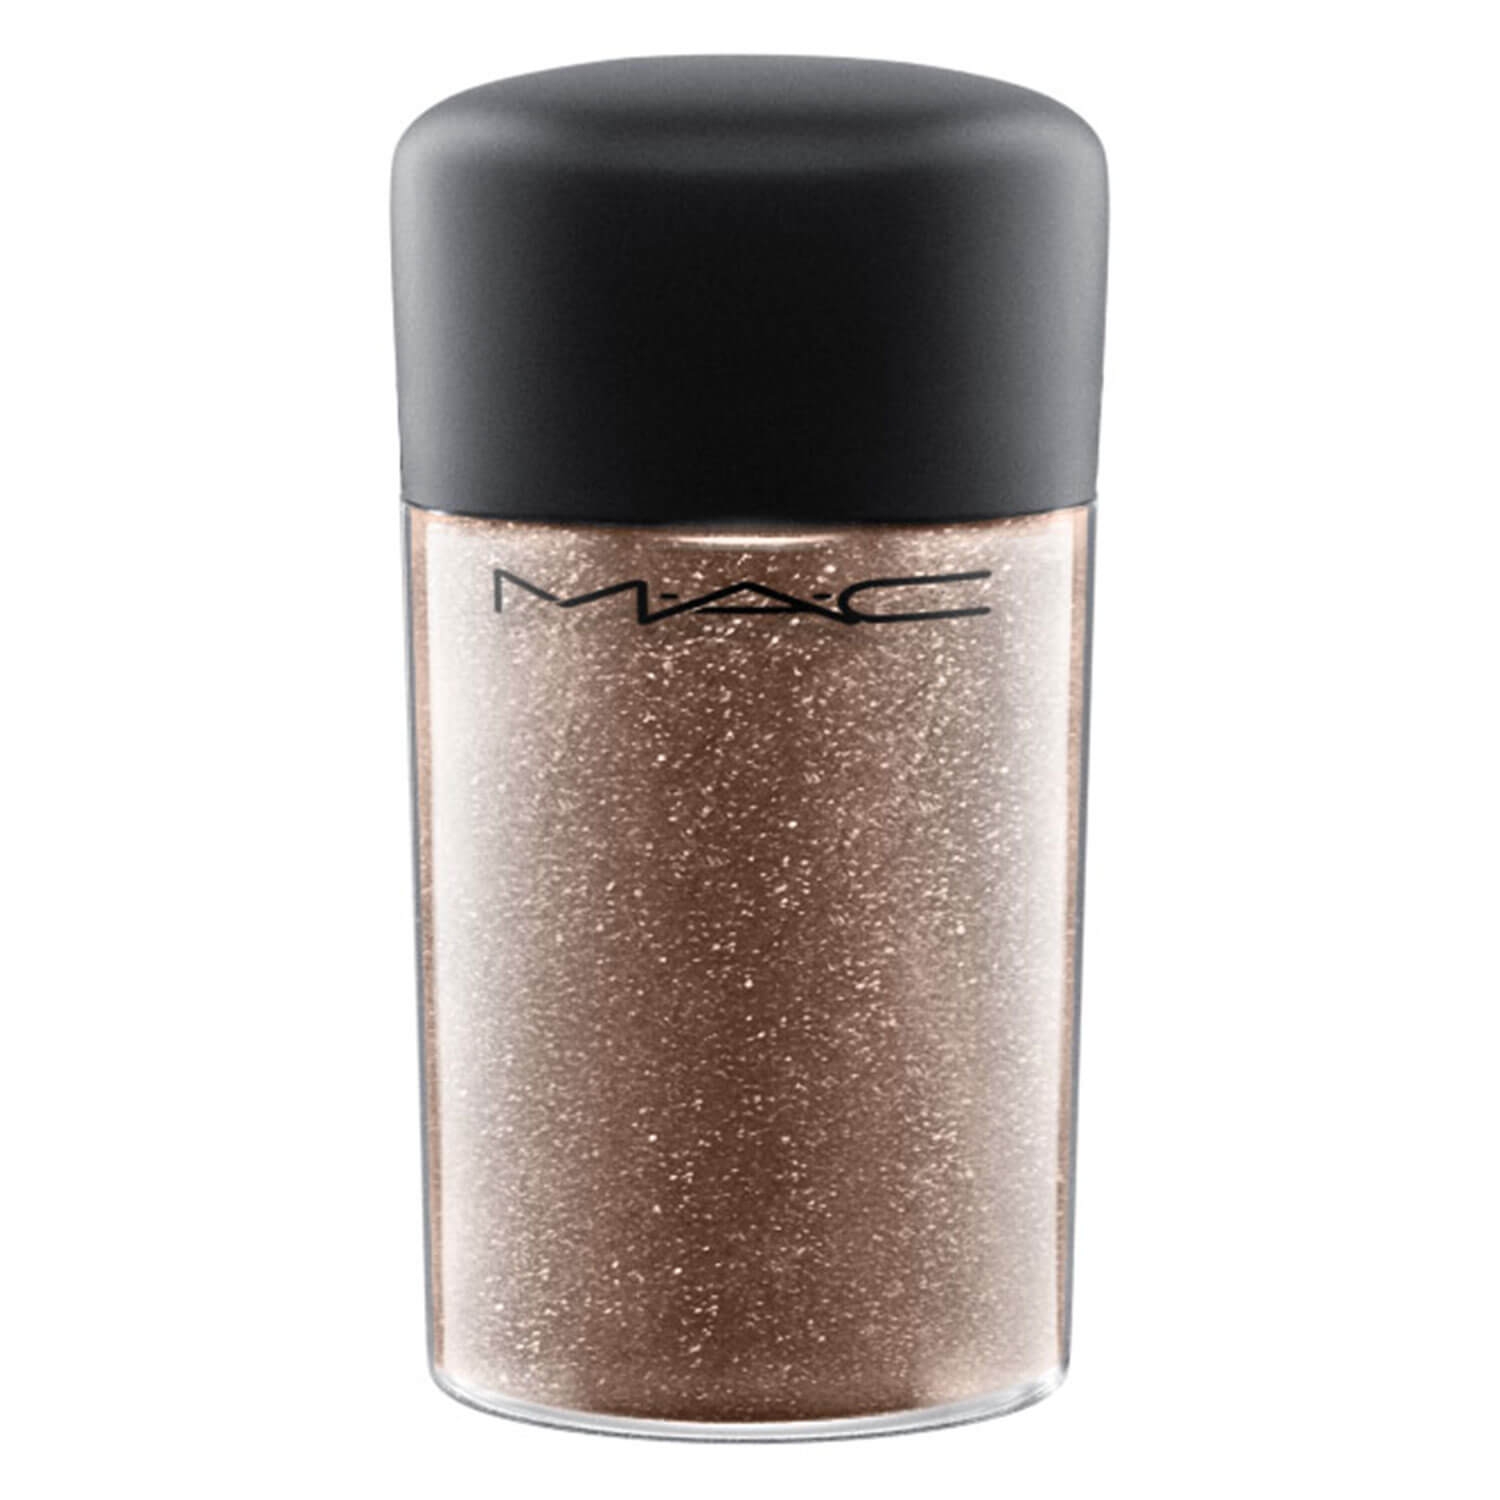 Produktbild von M·A·C In Monochrome - Pro Glitter Bronze